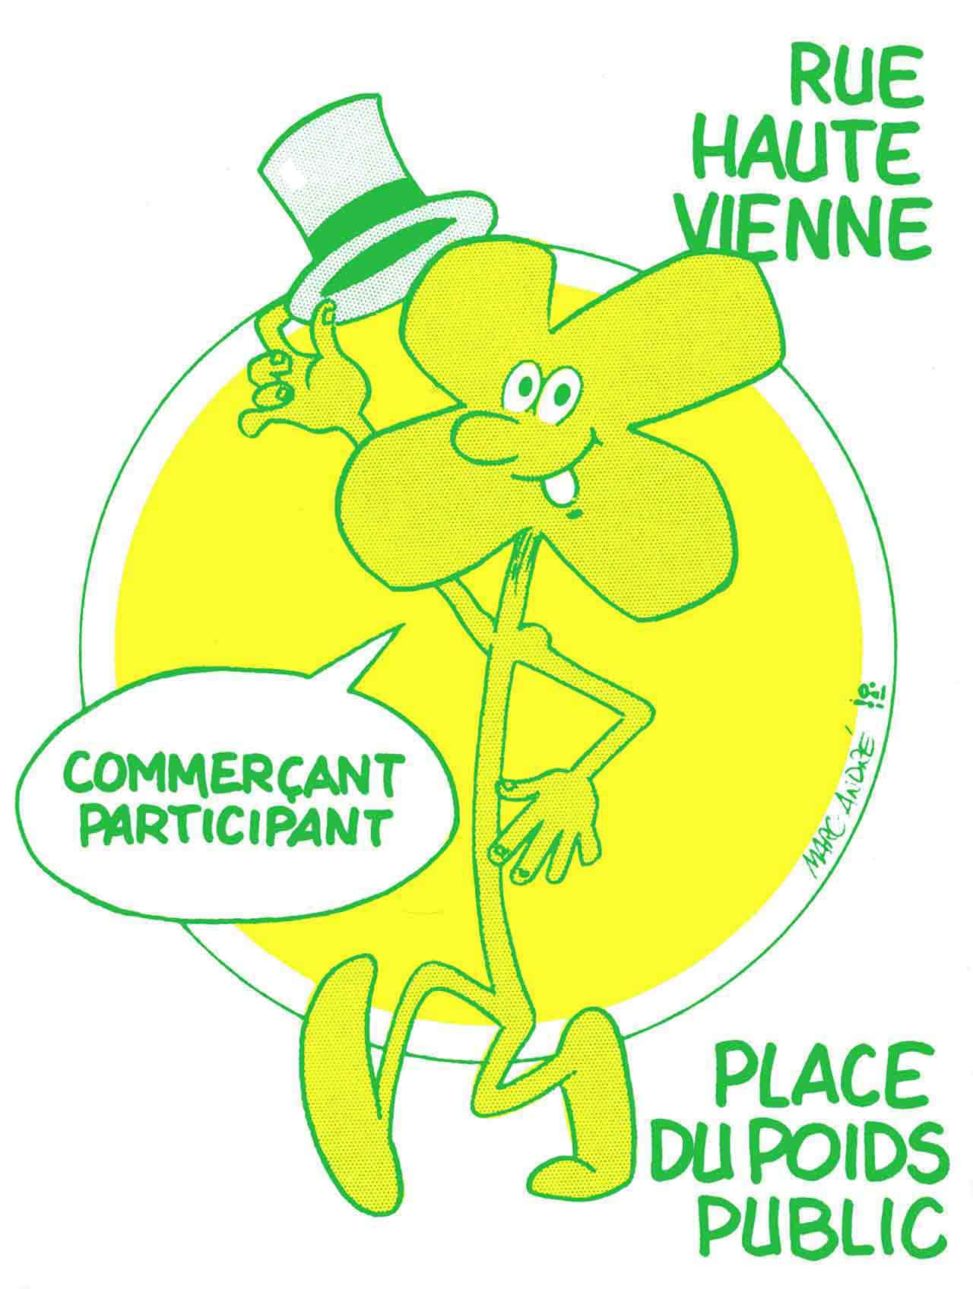 Le trèfle souriant, personnage Association des commerçants Rue Haute-Vienne et Place du Poids-Public 1985.